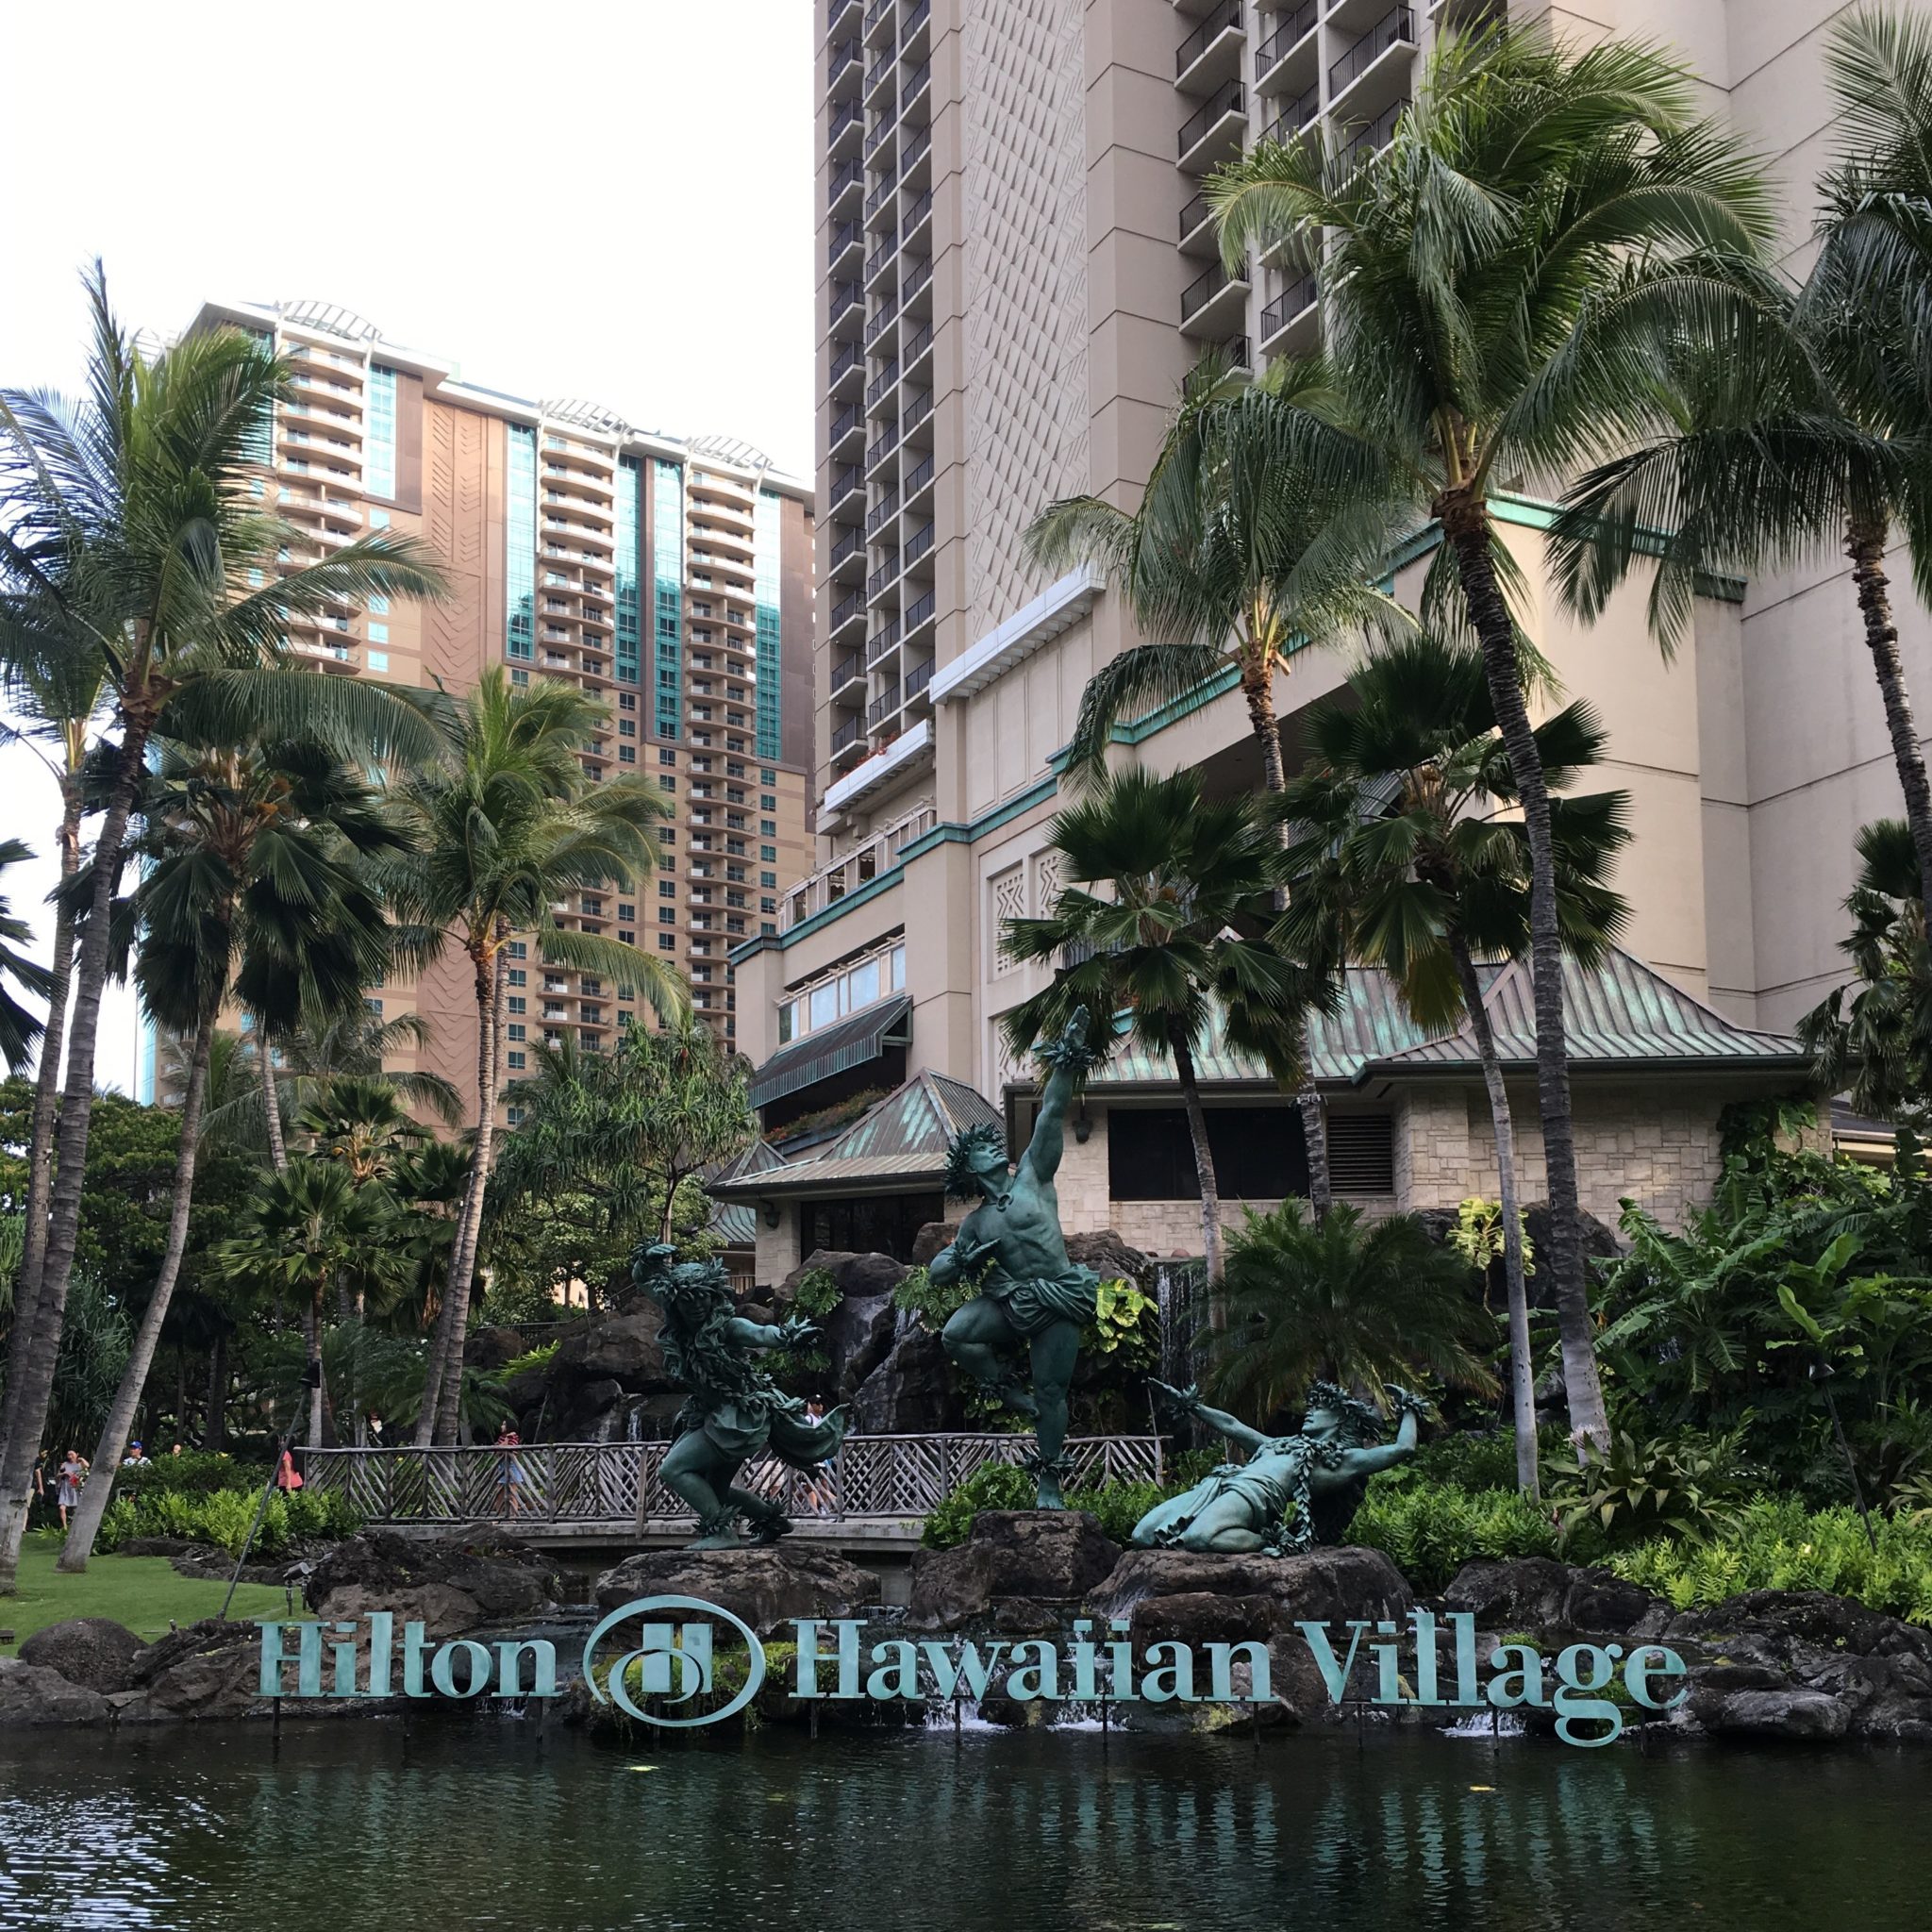 Hilton Hawaiian Village Waikiki Beach - Oahu